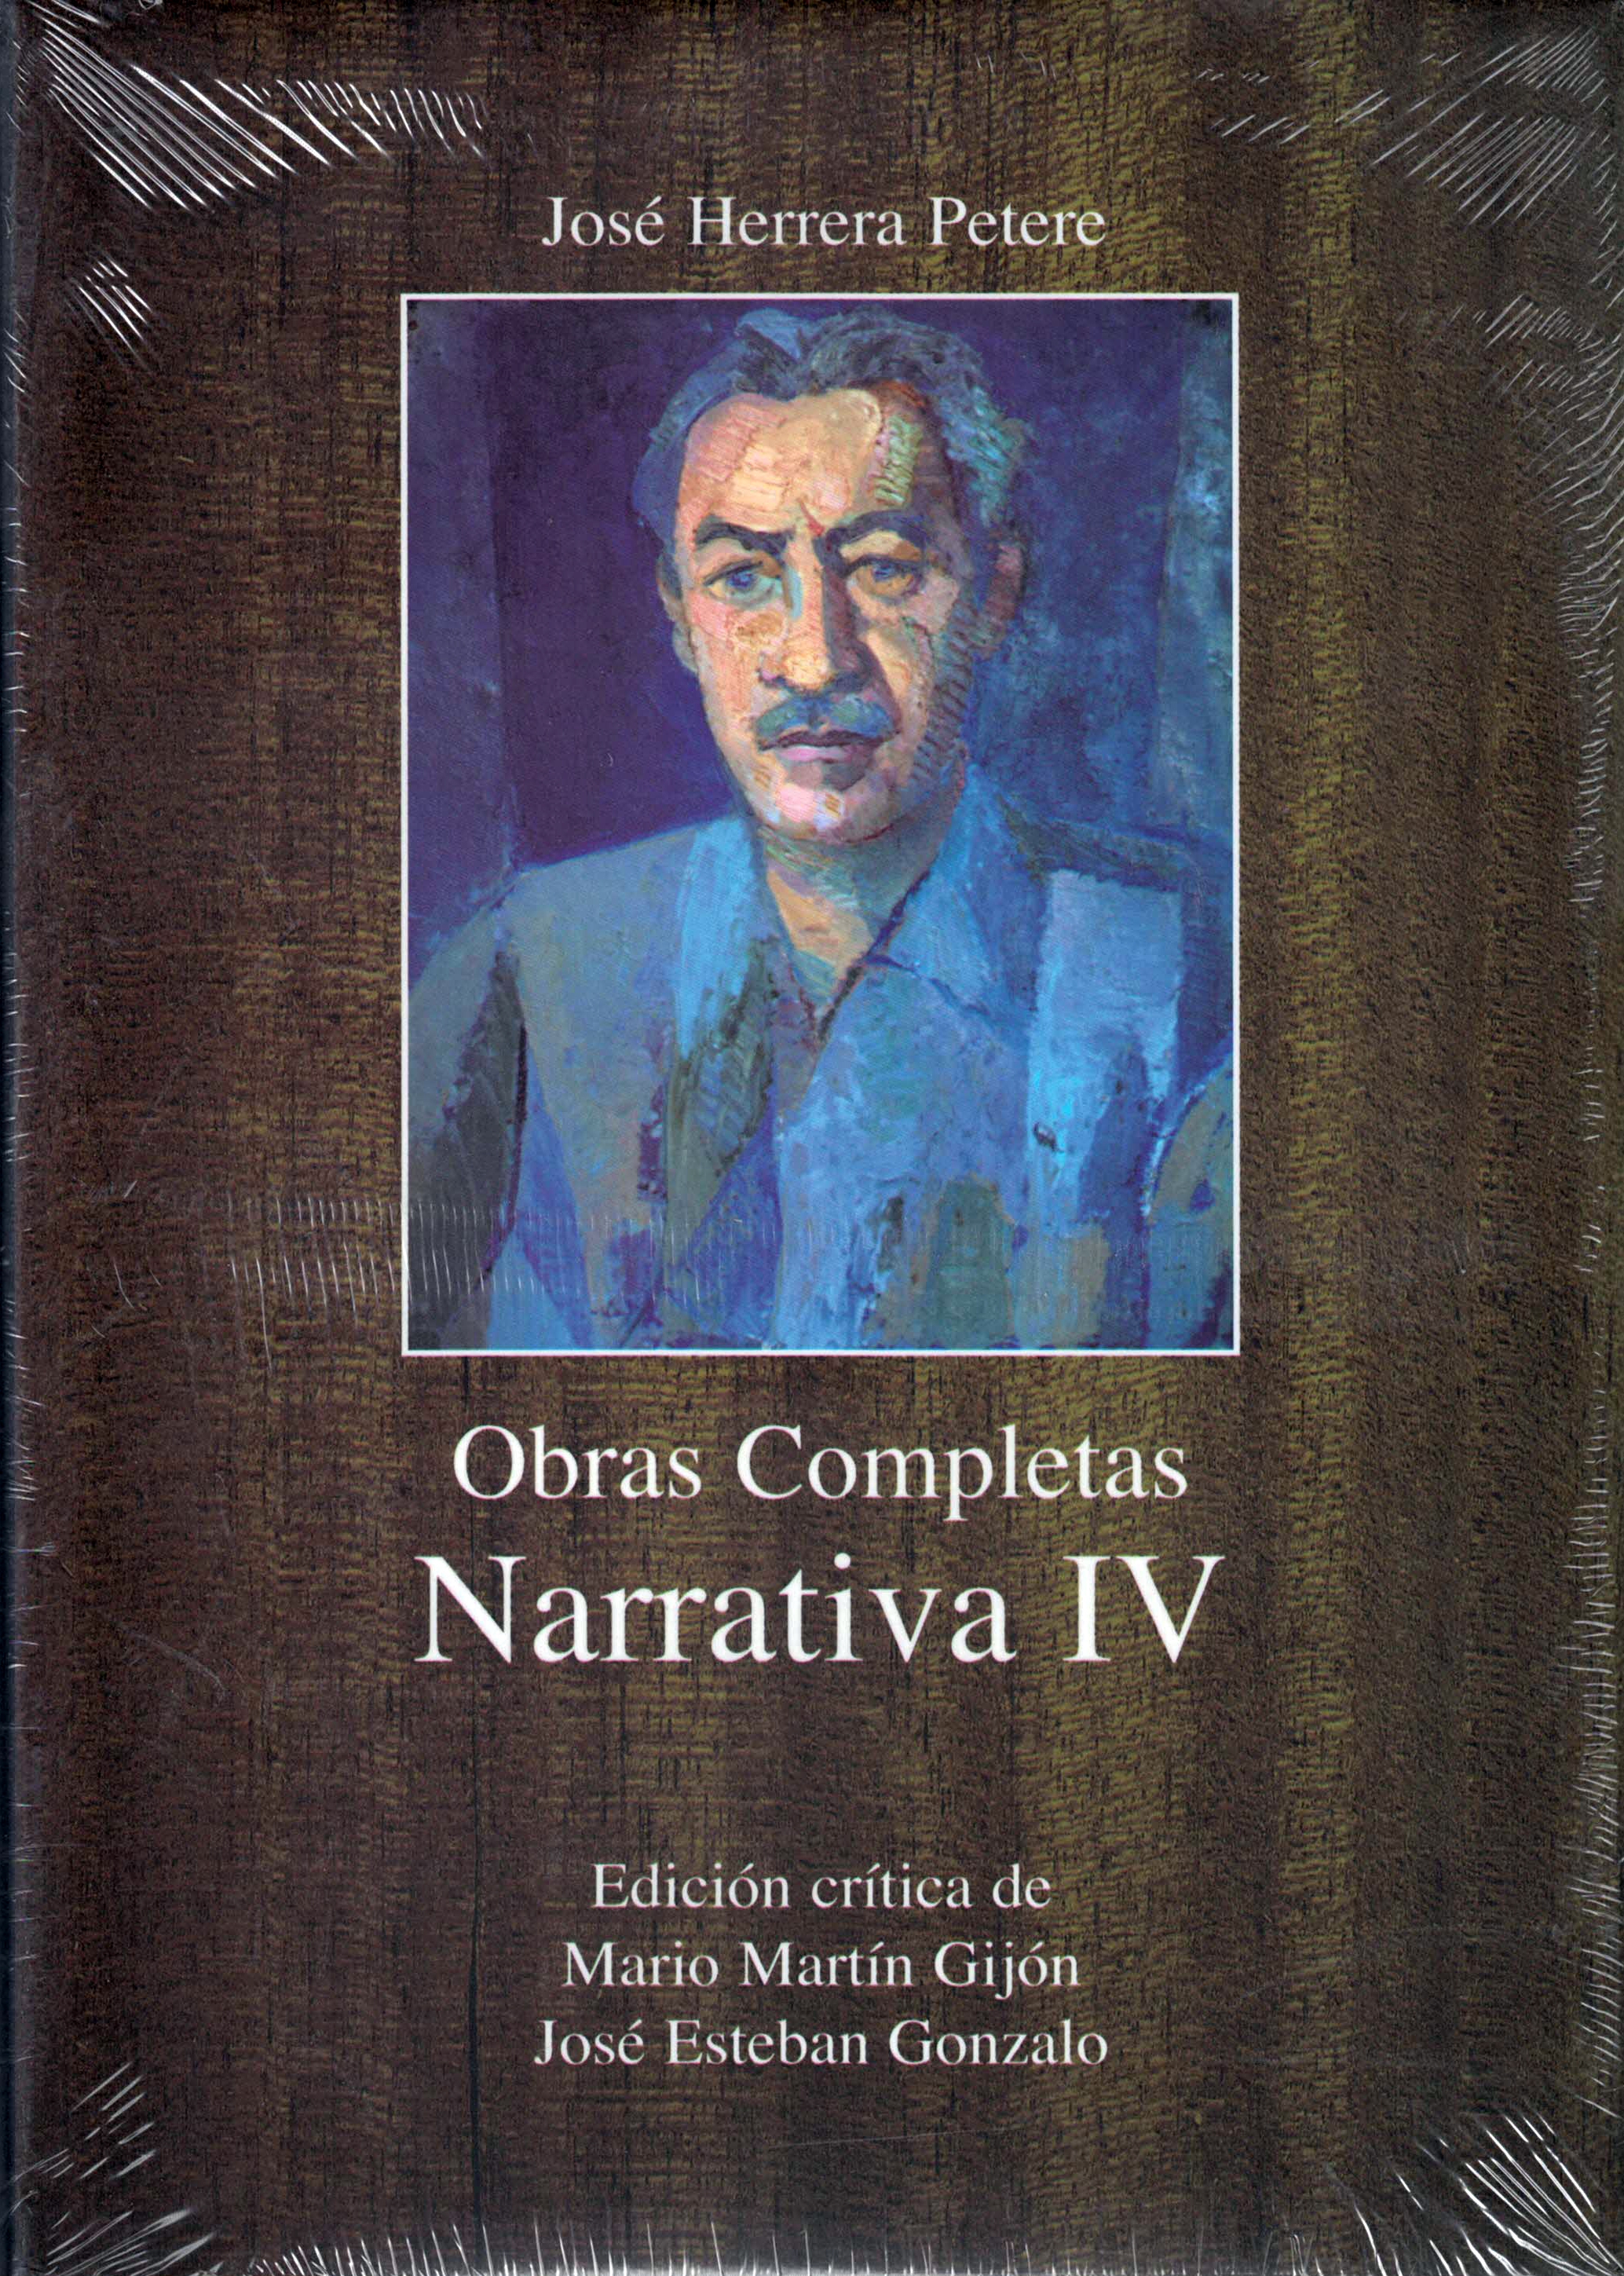 Obras Completas Narrativa IV, José Herrera Petere